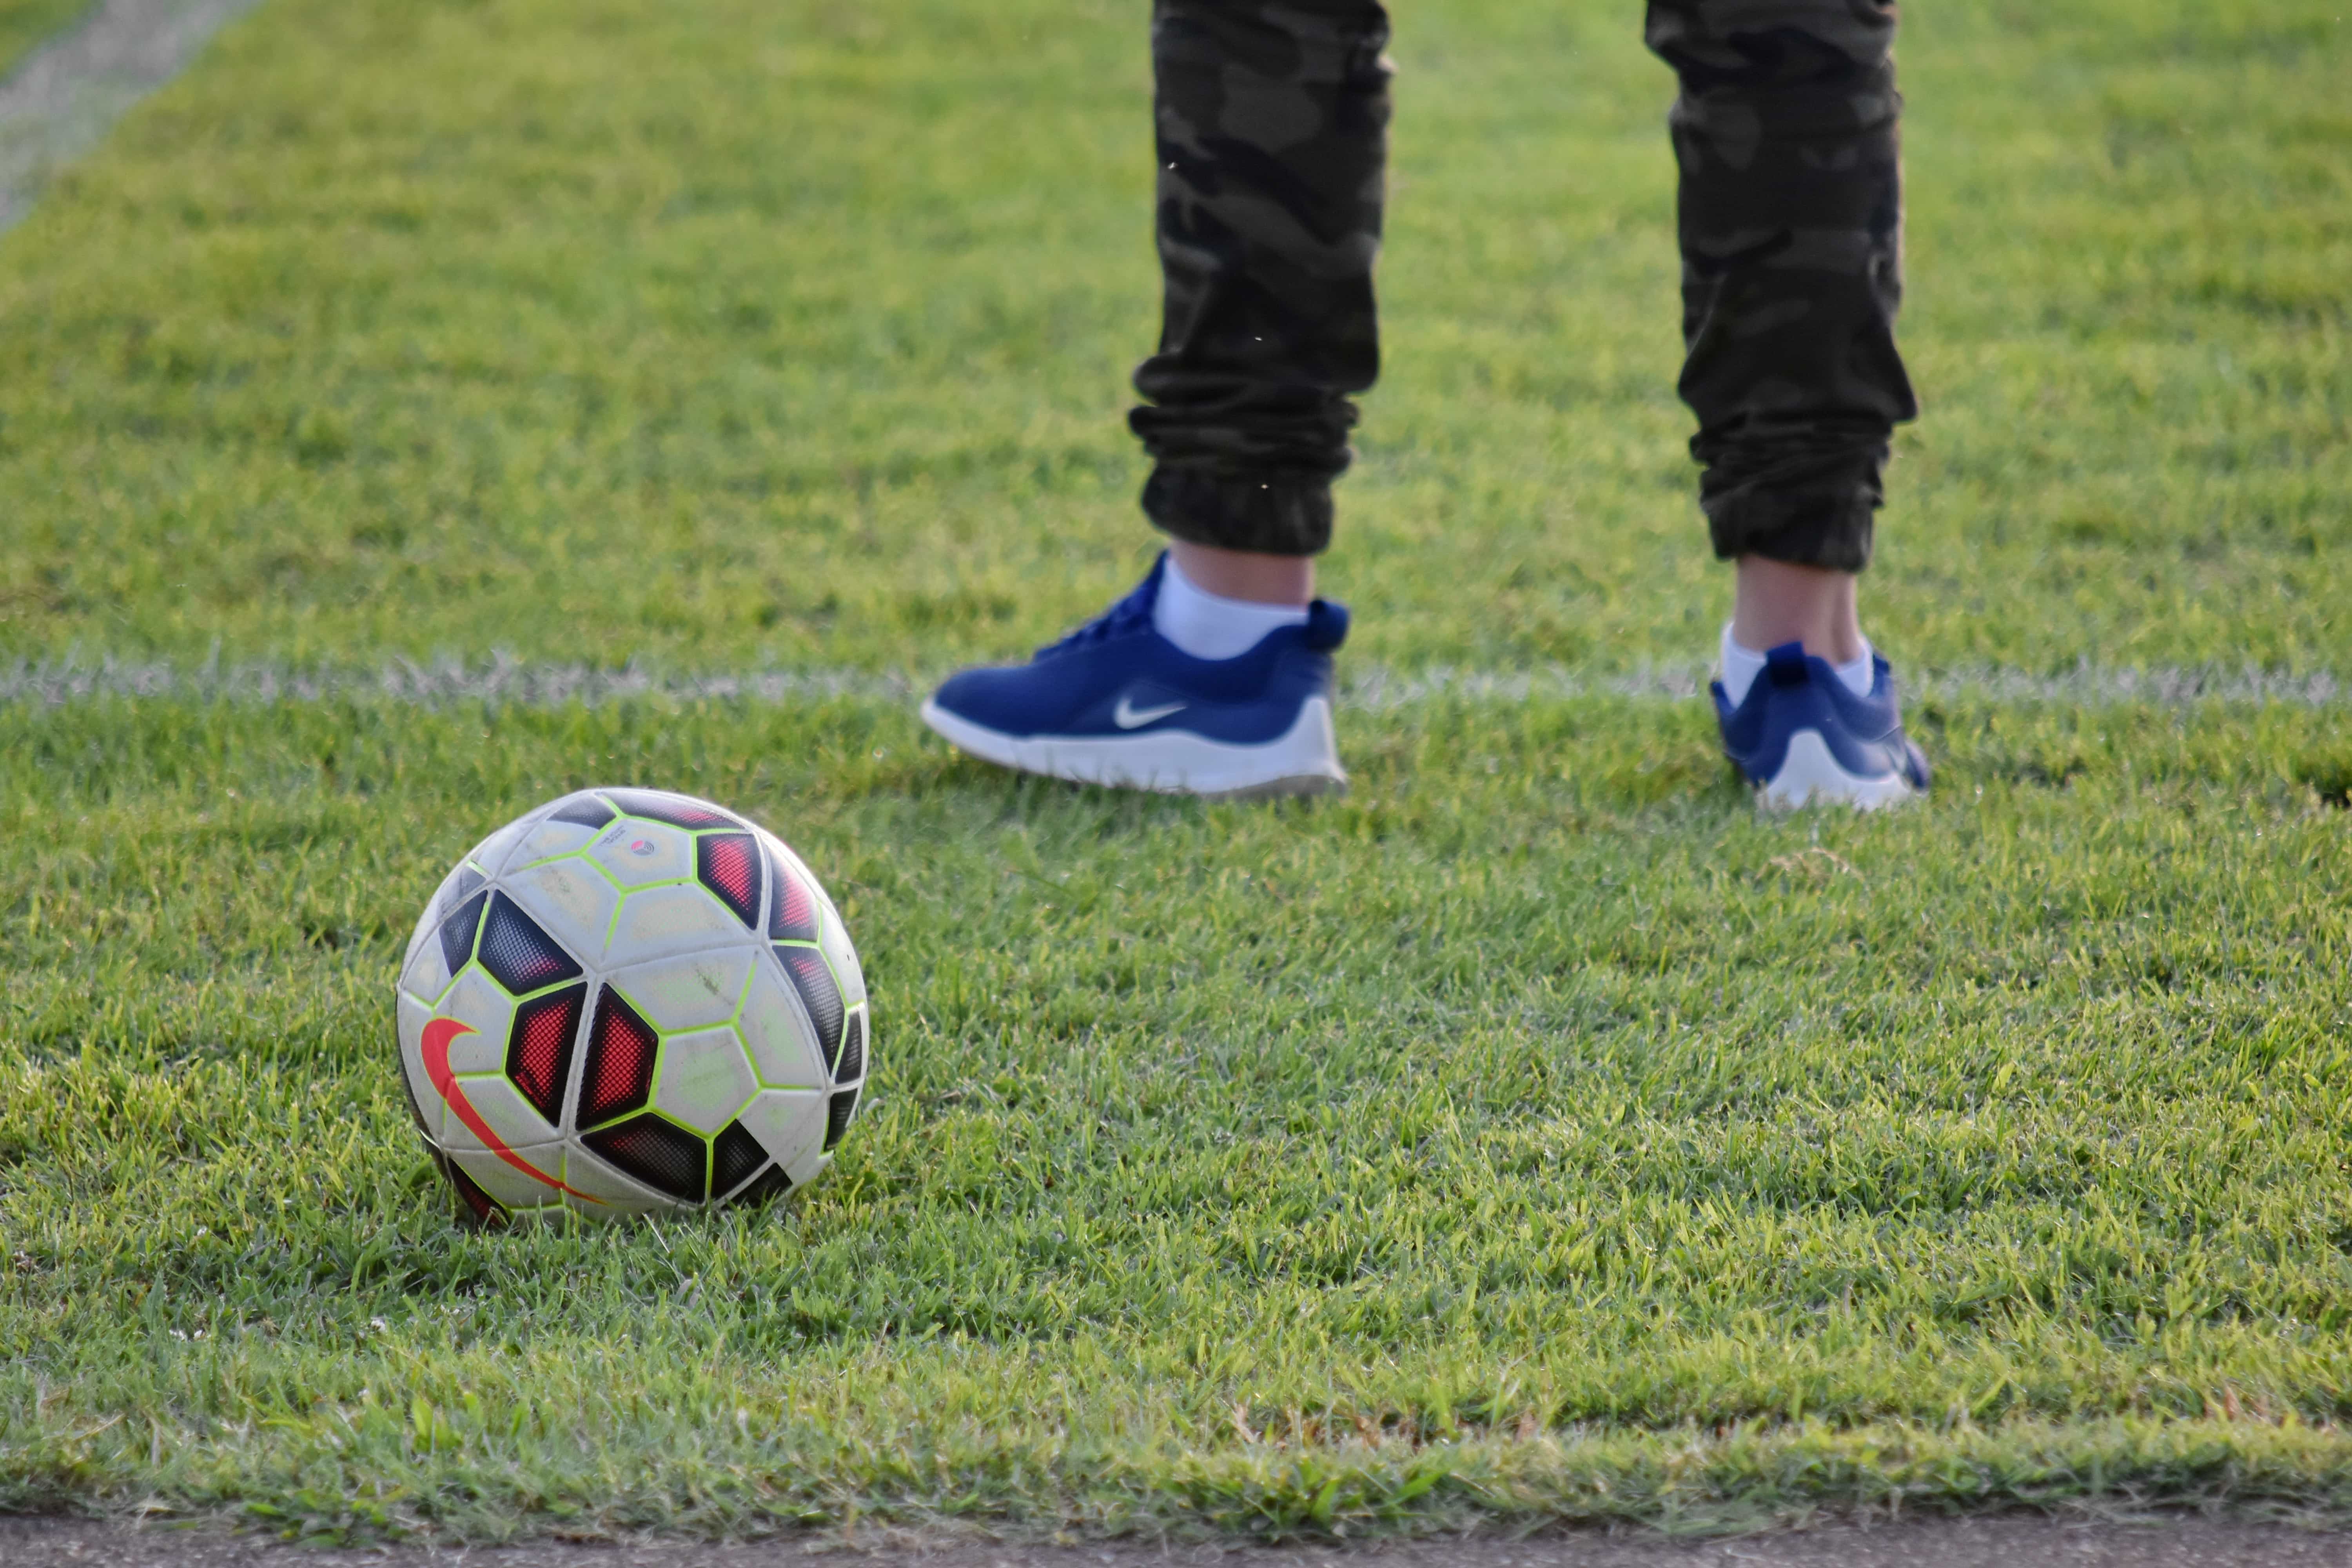 Image libre: football, joueur de football, sport, ballon de soccer, équipement, jeu, football ...